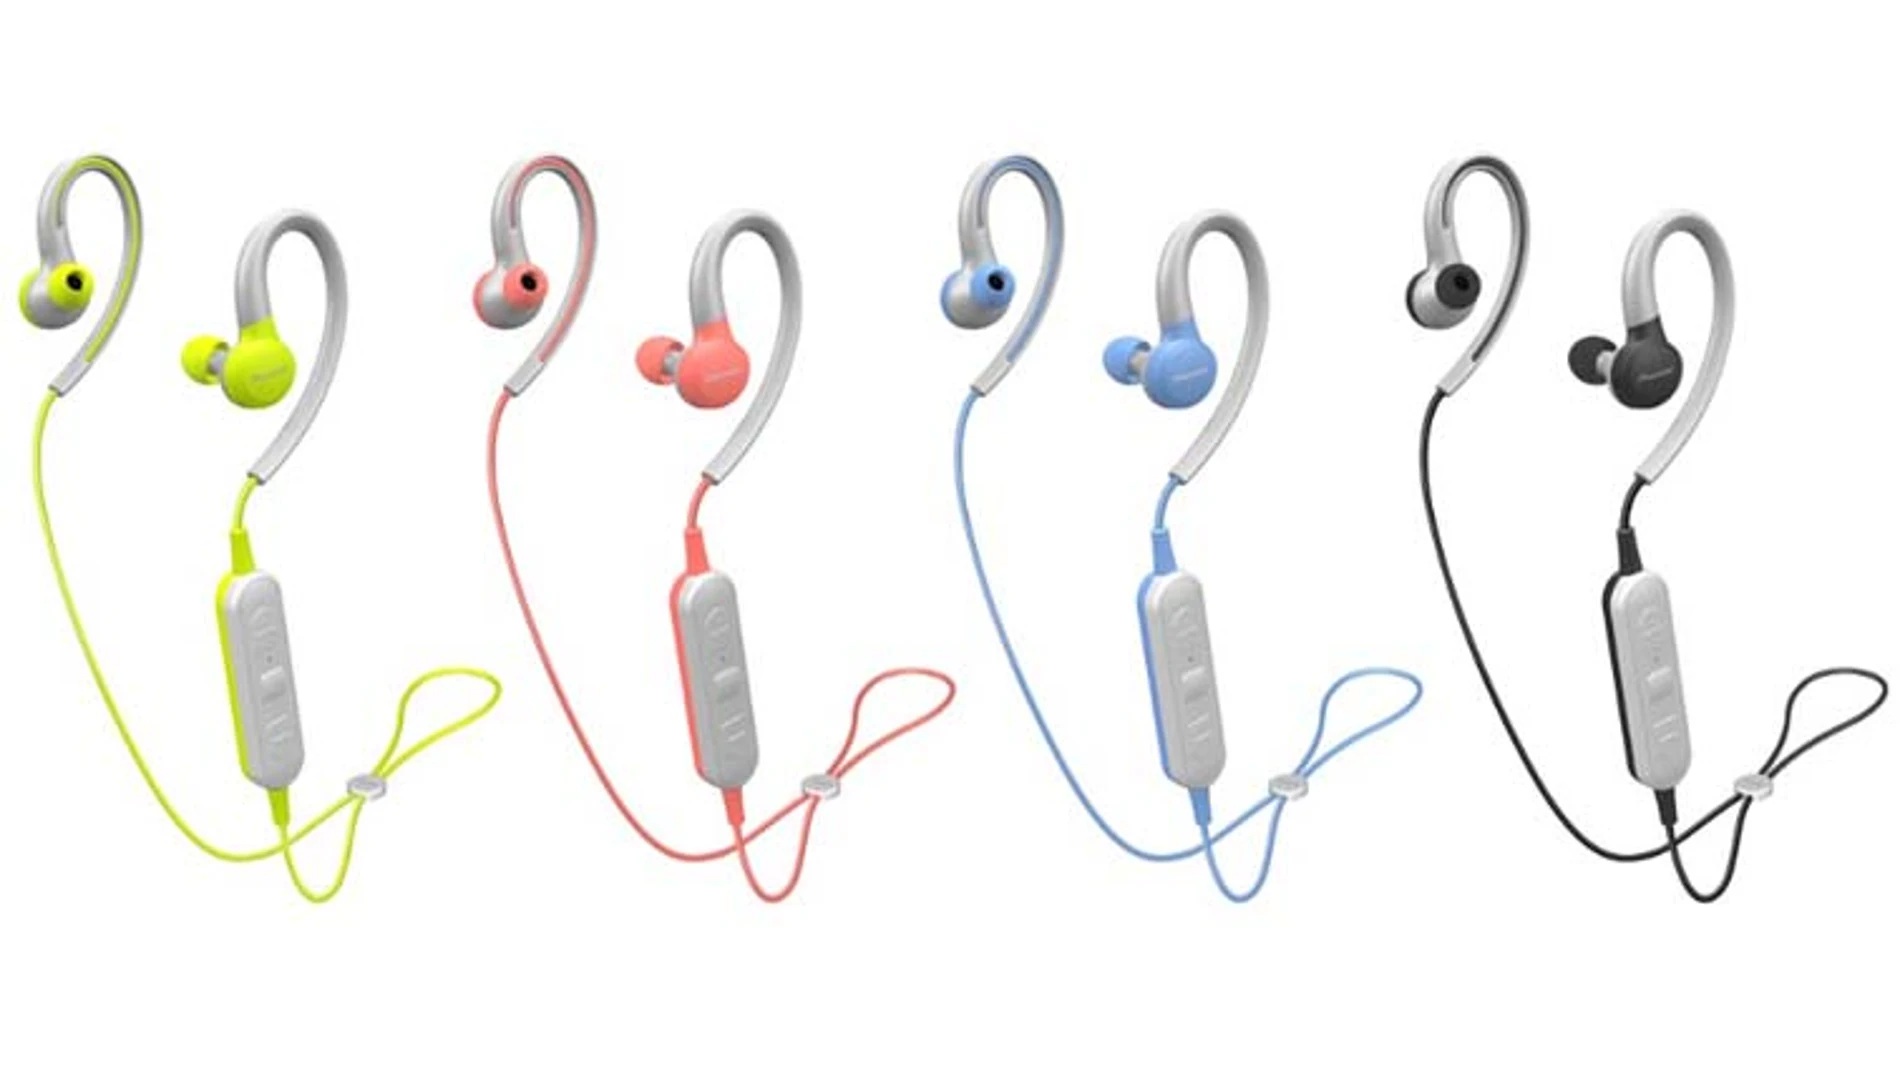 En cuatro llamativos colores, estos auriculares están diseñados para la práctica de deportes.